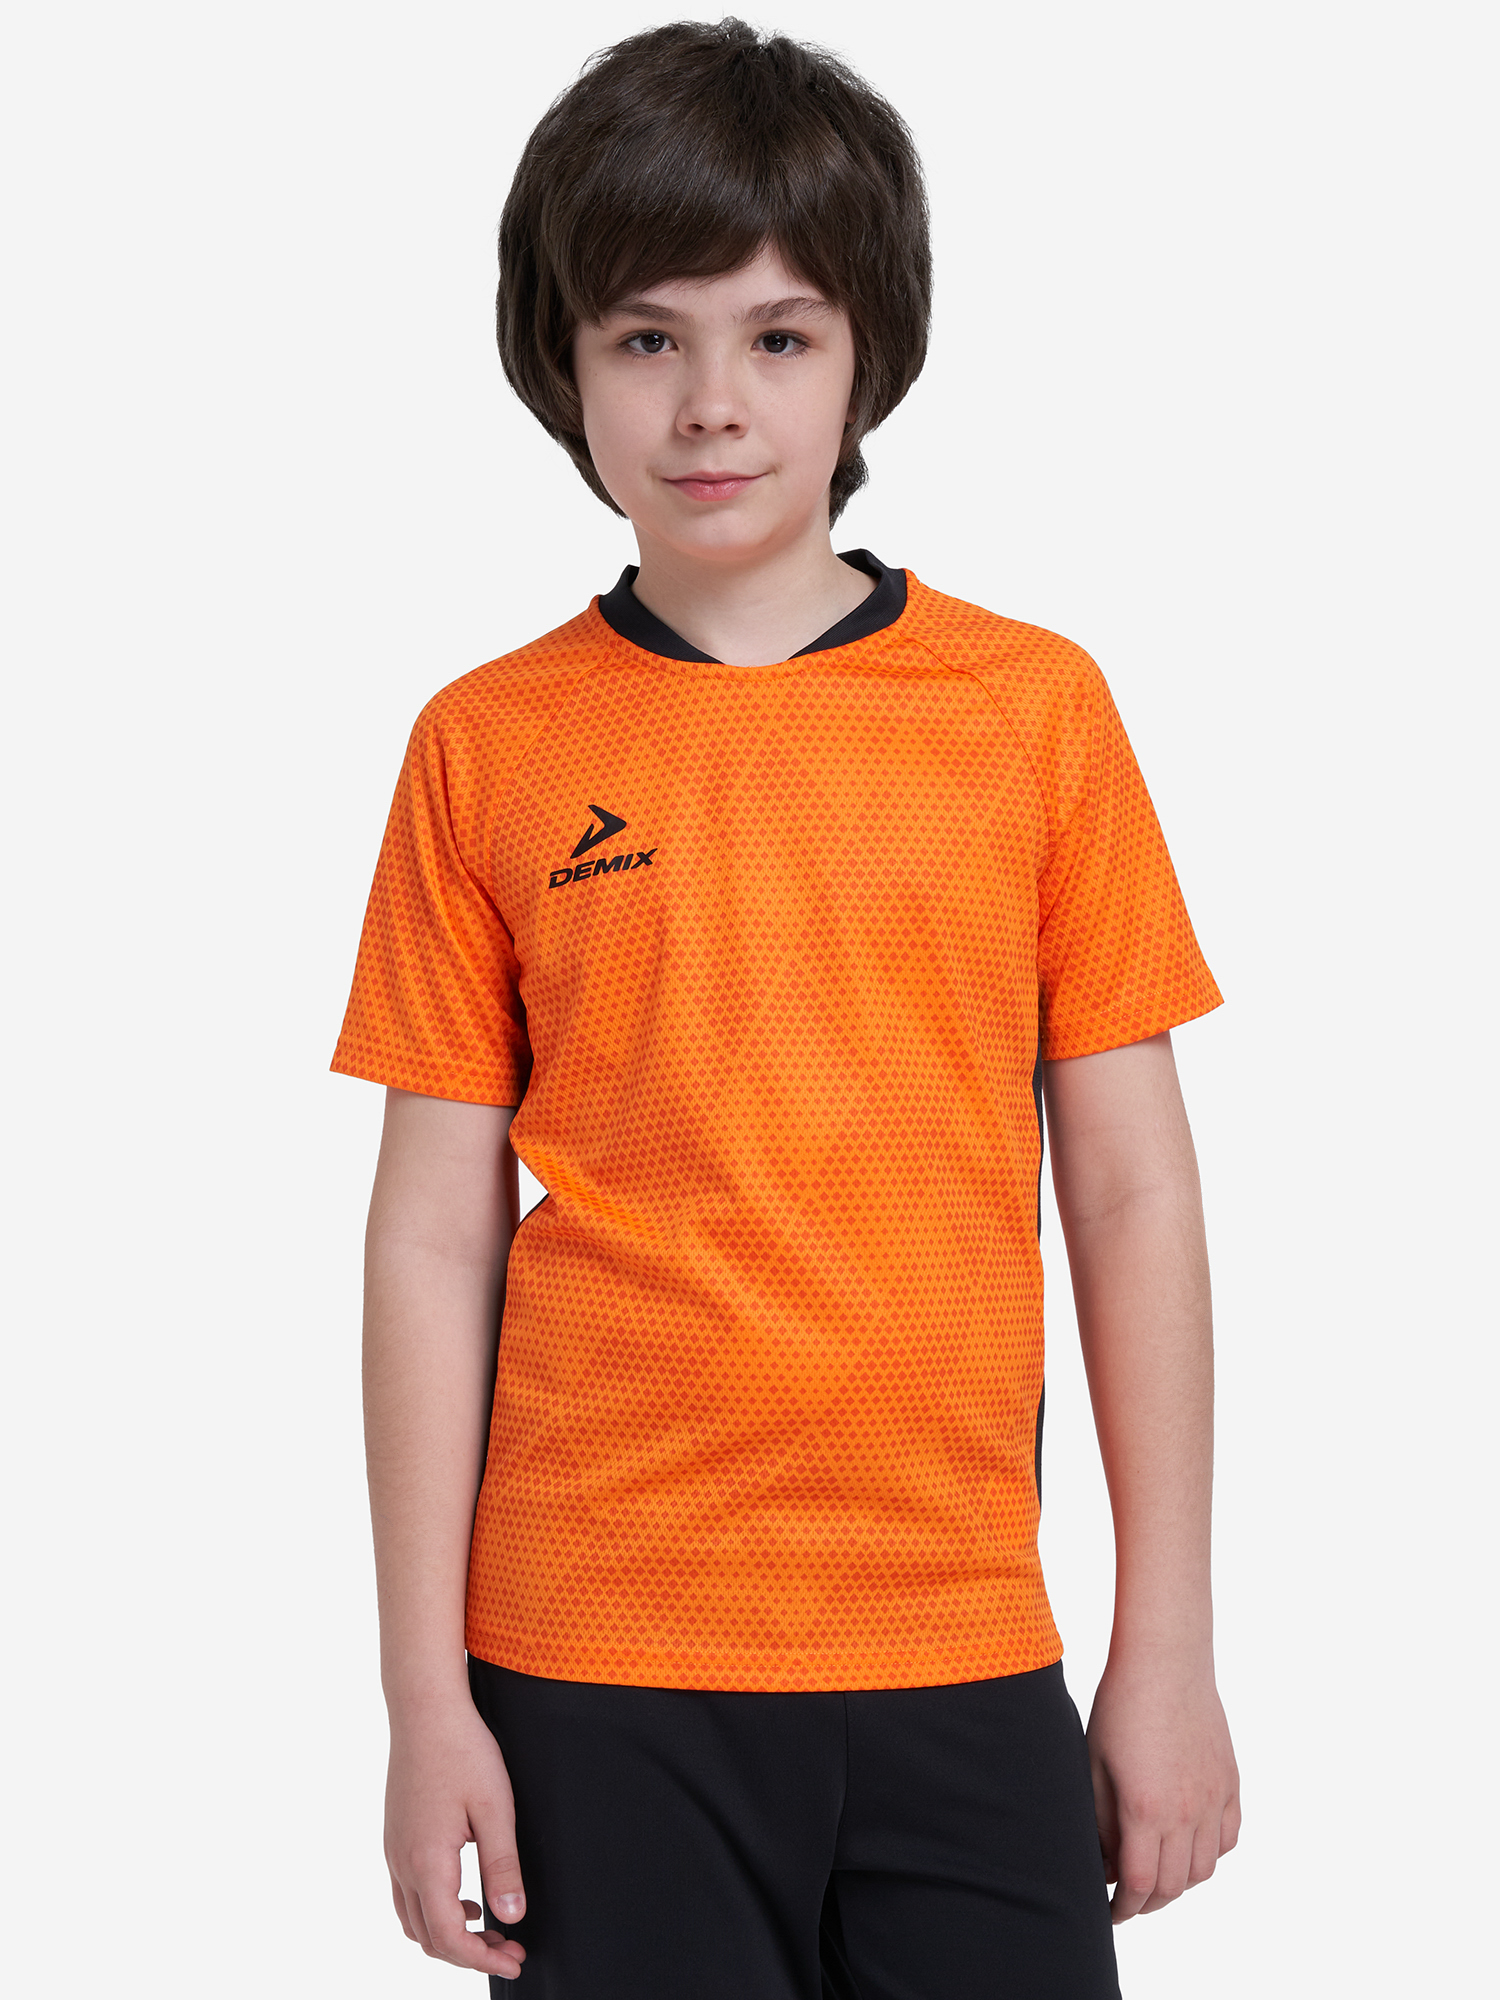 Футболка для мальчиков Demix Strike, Оранжевый футболка для мальчиков demix strike оранжевый